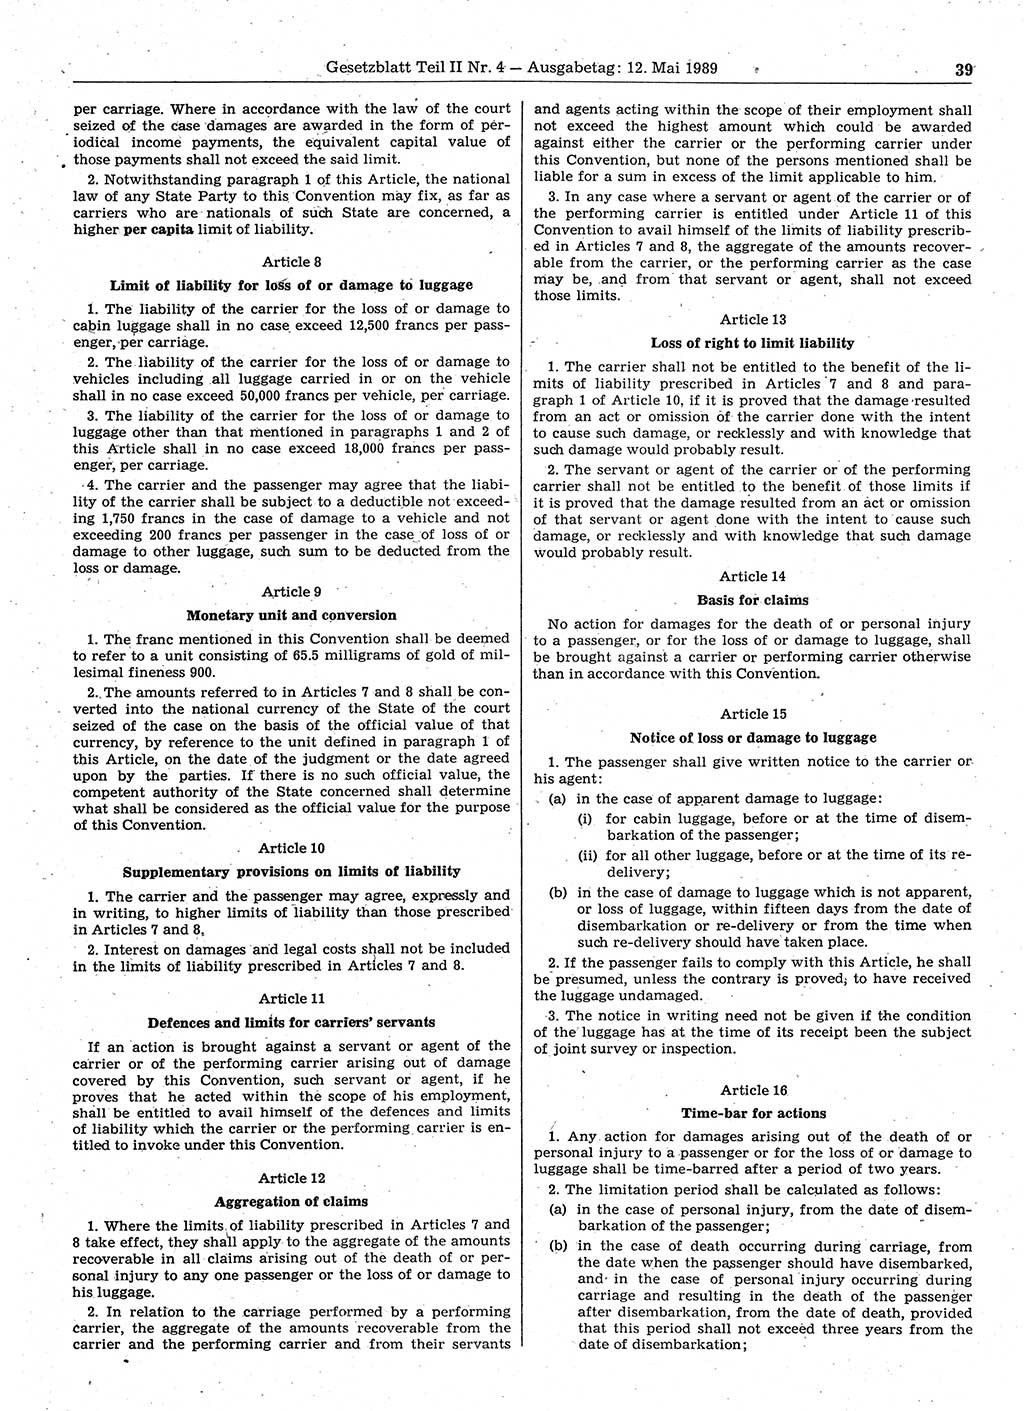 Gesetzblatt (GBl.) der Deutschen Demokratischen Republik (DDR) Teil ⅠⅠ 1989, Seite 39 (GBl. DDR ⅠⅠ 1989, S. 39)